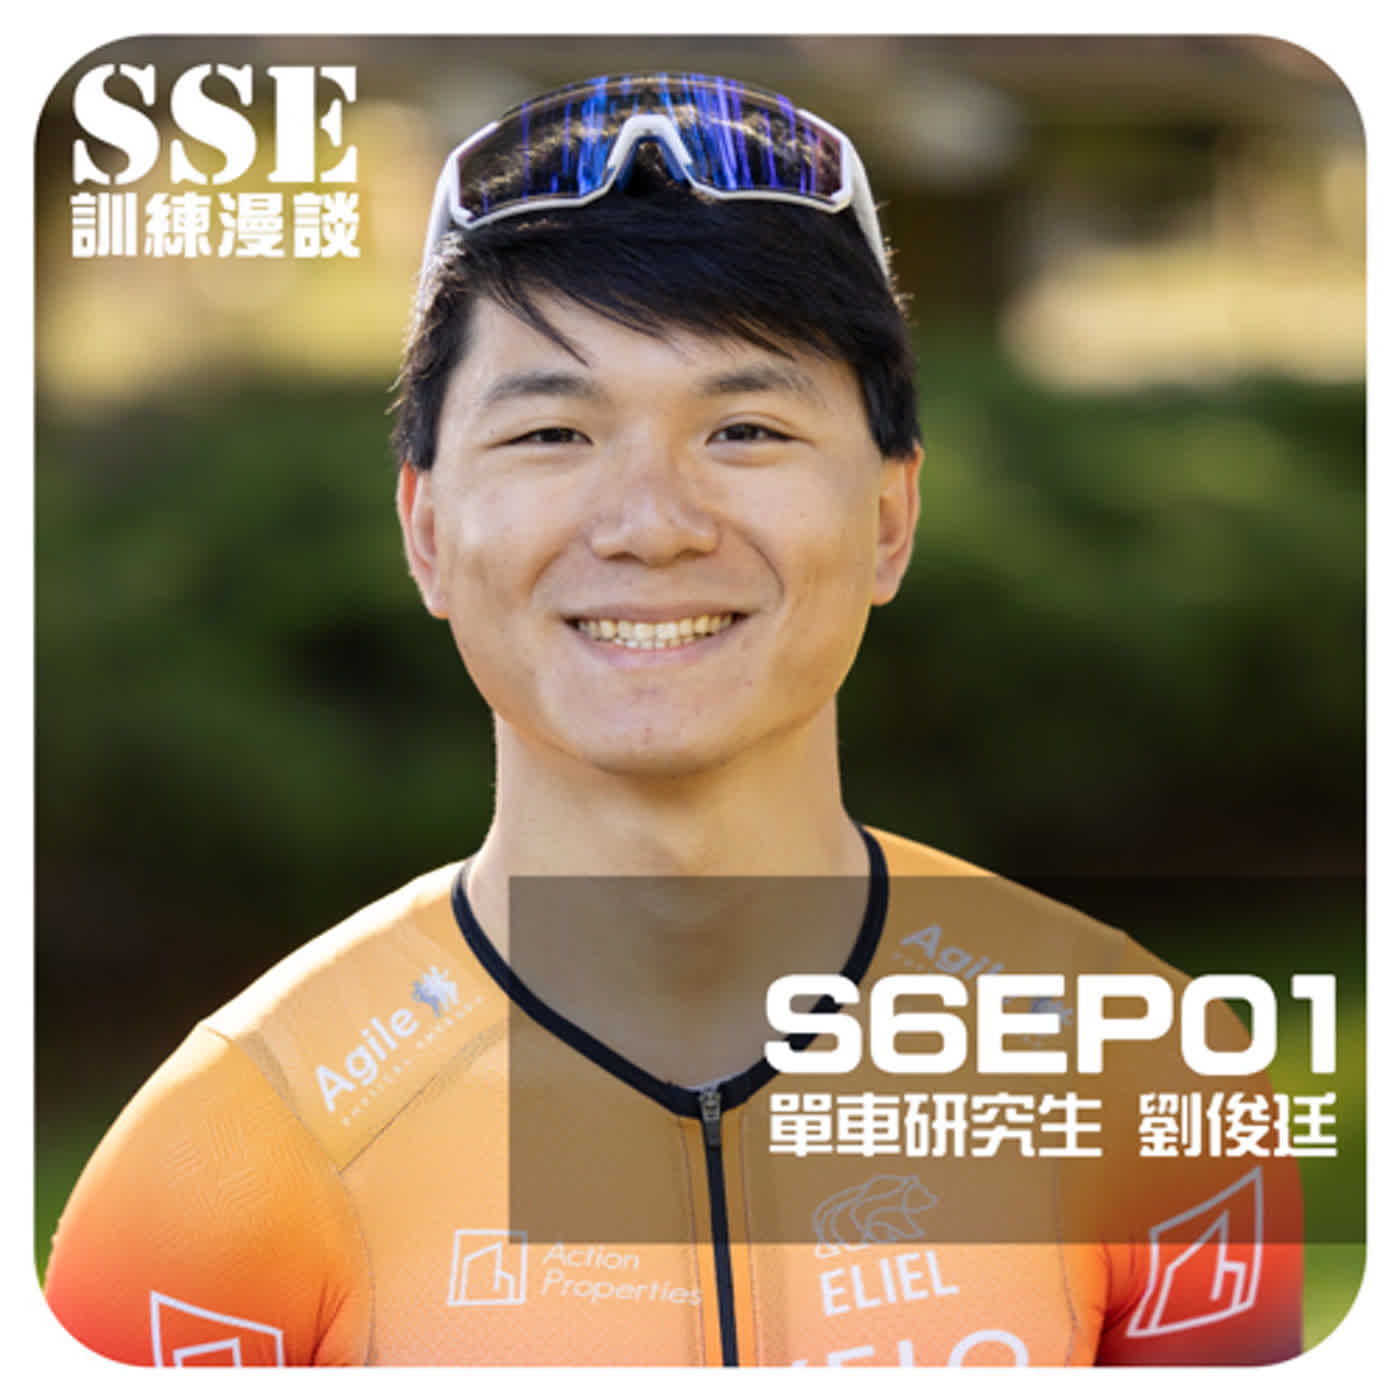 【S6E01】繞圈賽與迷幻蘑菇 -- 專訪「單車研究生」 劉俊廷